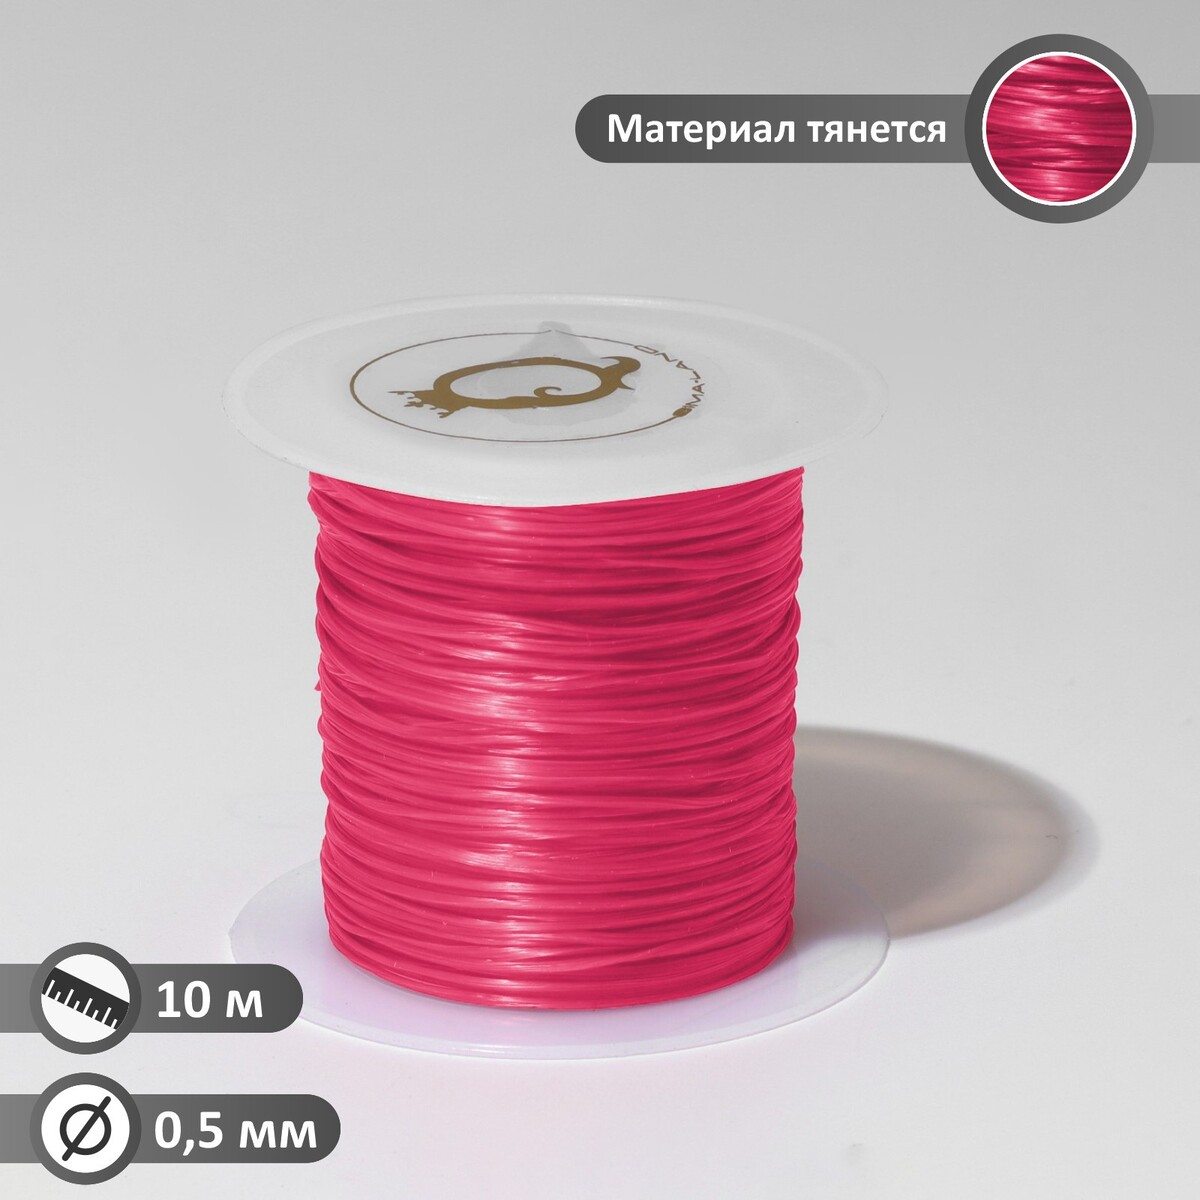 Нить силиконовая (резинка) d=0,5 мм, l=10 м (прочность 2250 денье), цвет розовый